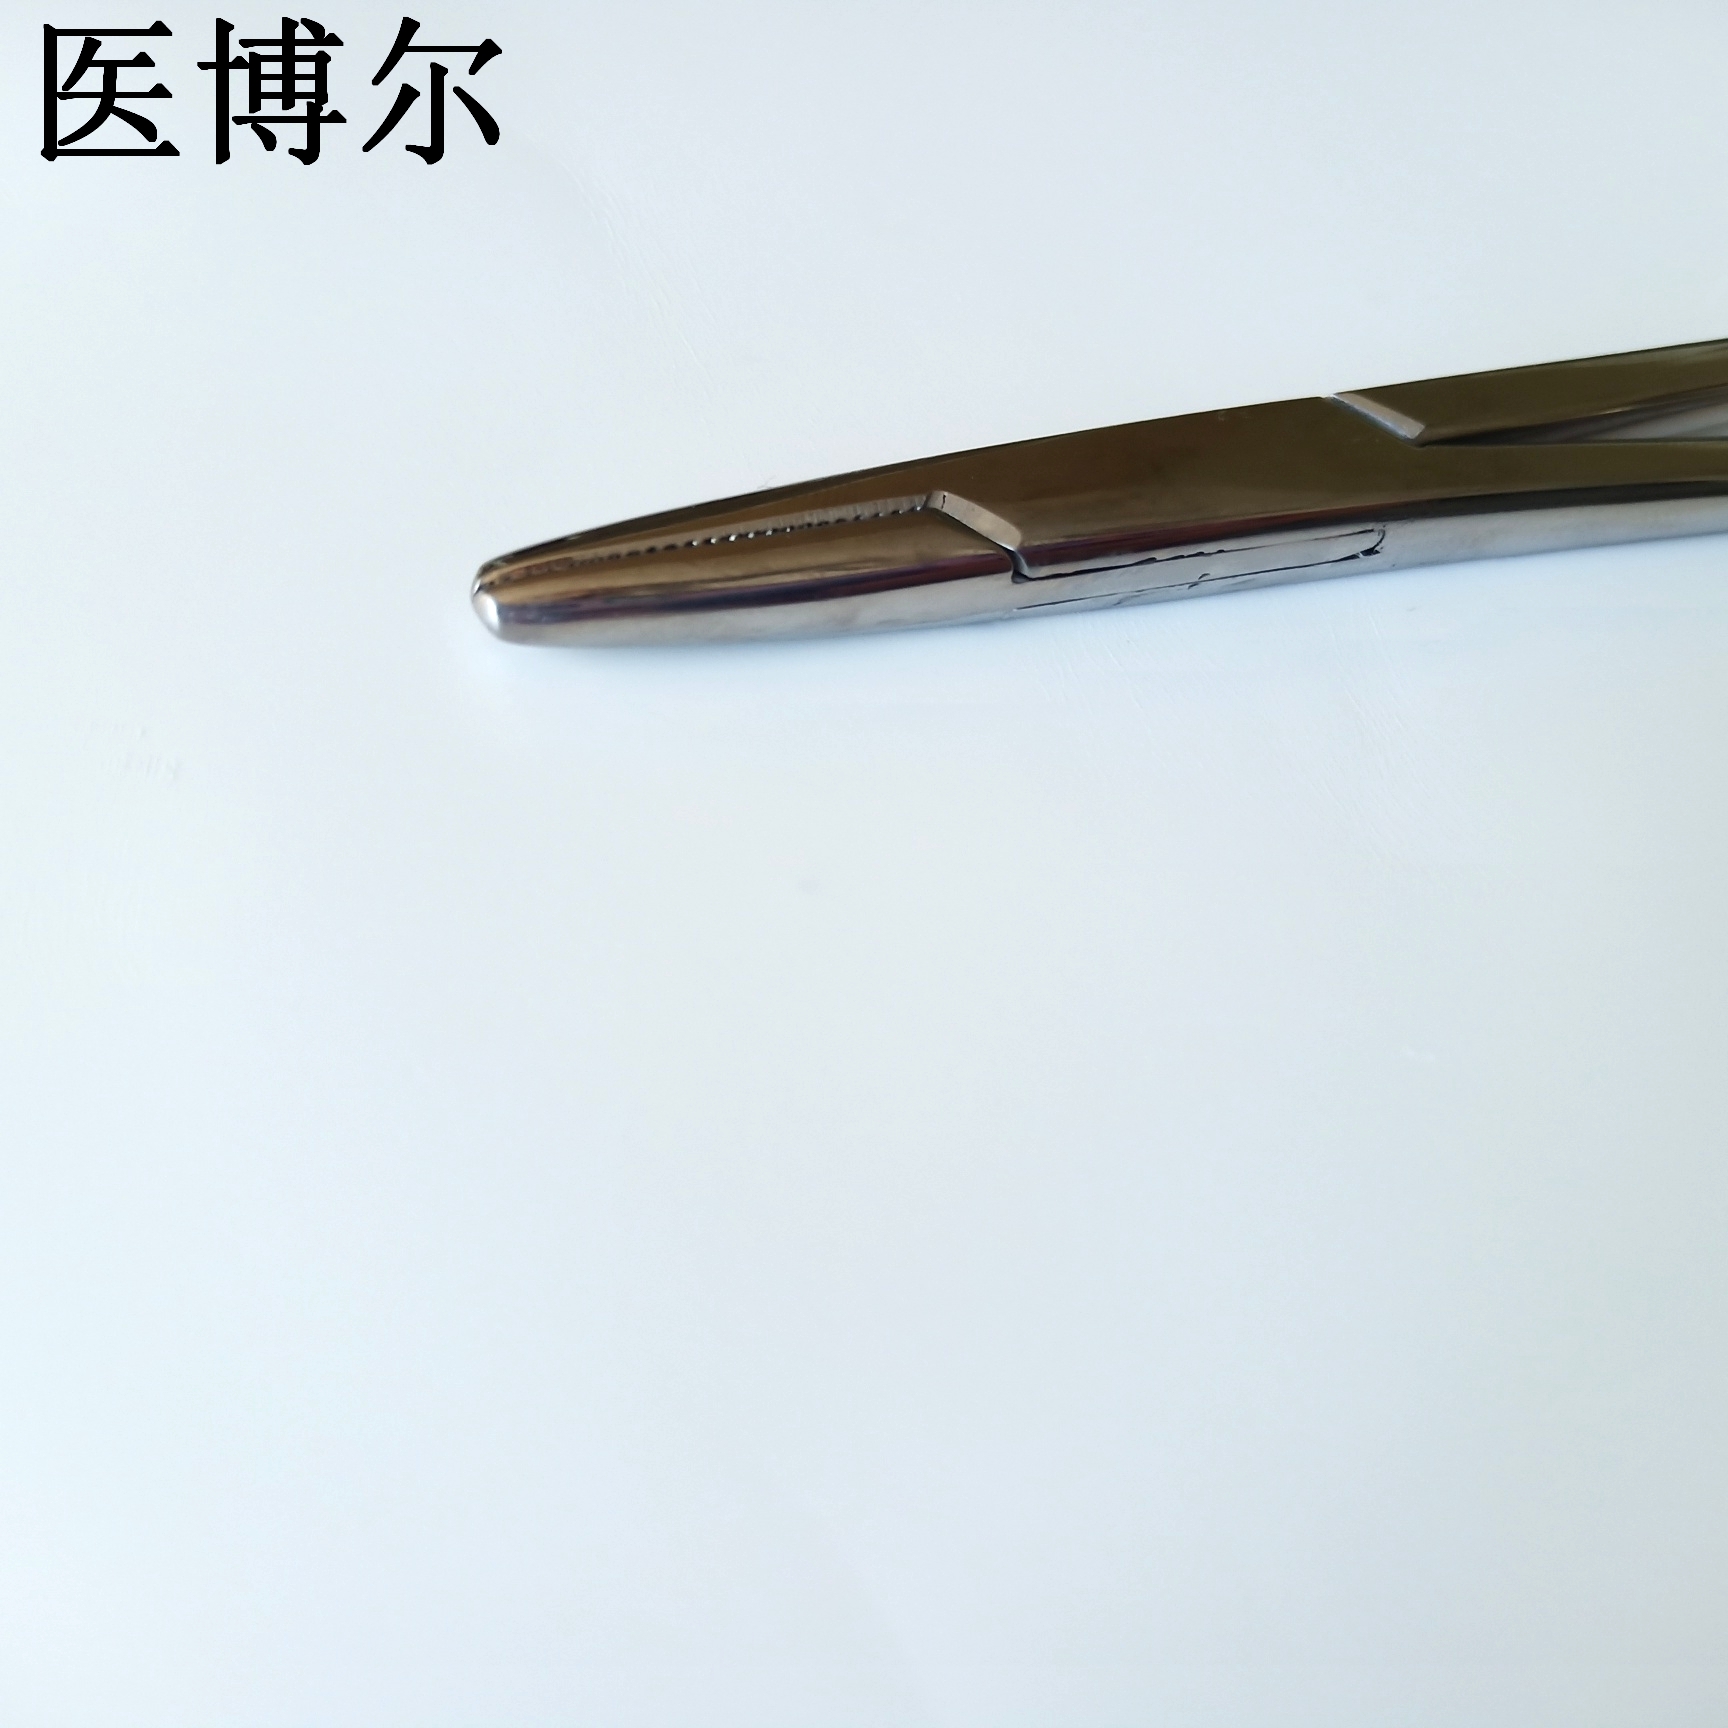 18cm粗针持针器 (4)_看图王.jpg